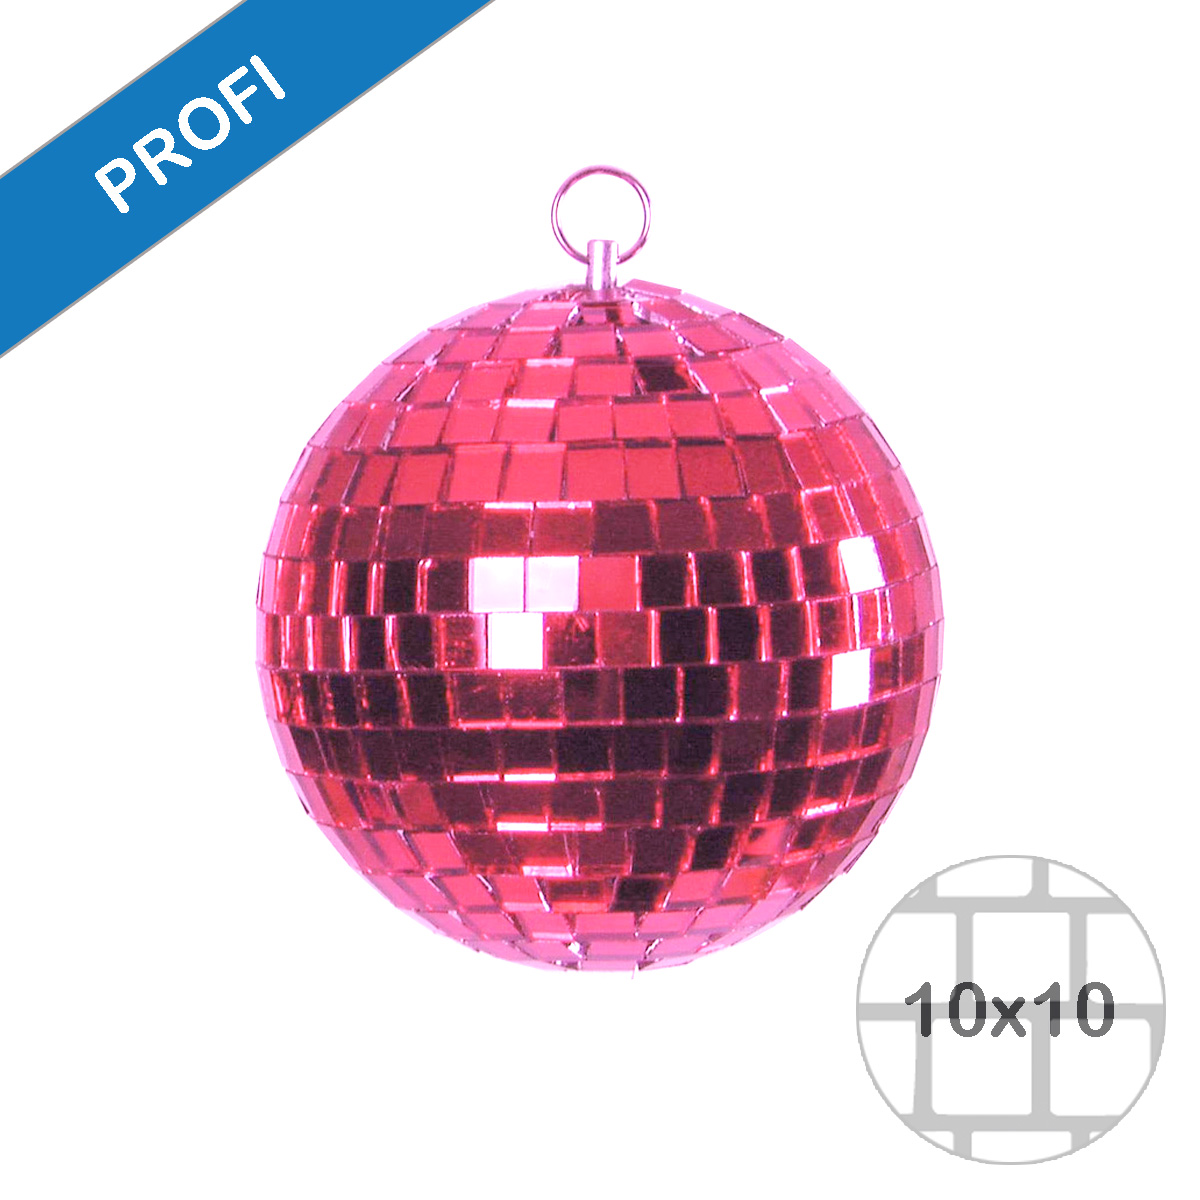 Spiegelkugel 20cm farbig pink rosa- Diskokugel (Discokugel) zur Dekoration und Party- Echtglas - mirrorball pink rose purple